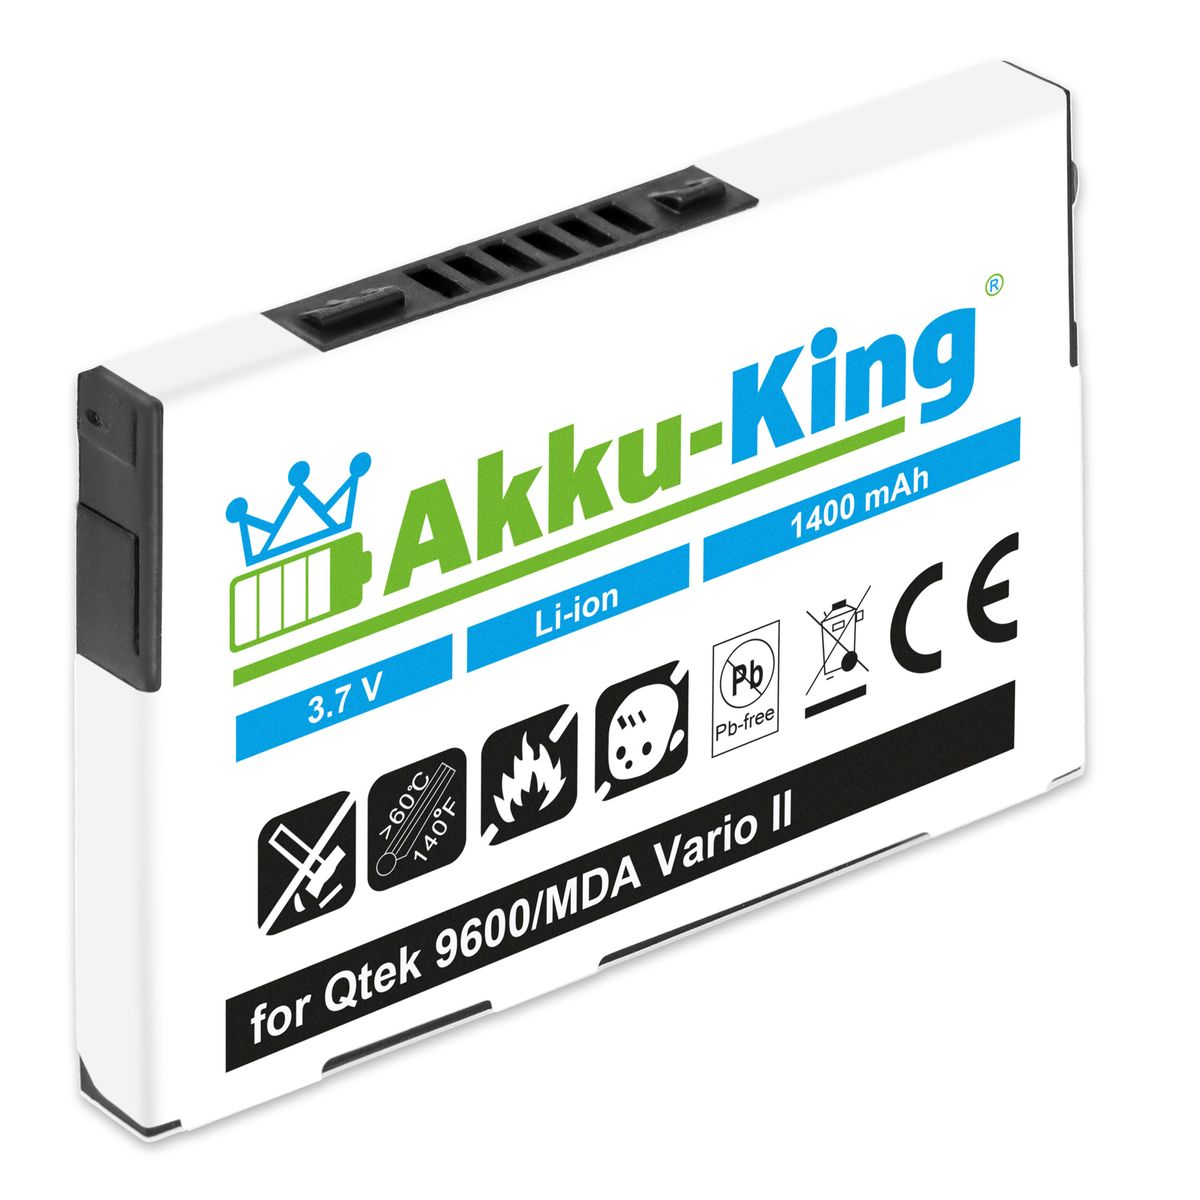 1400mAh 3.7 Qtek Handy-Akku, Li-Ion Akku HTABB1 Volt, kompatibel mit AKKU-KING